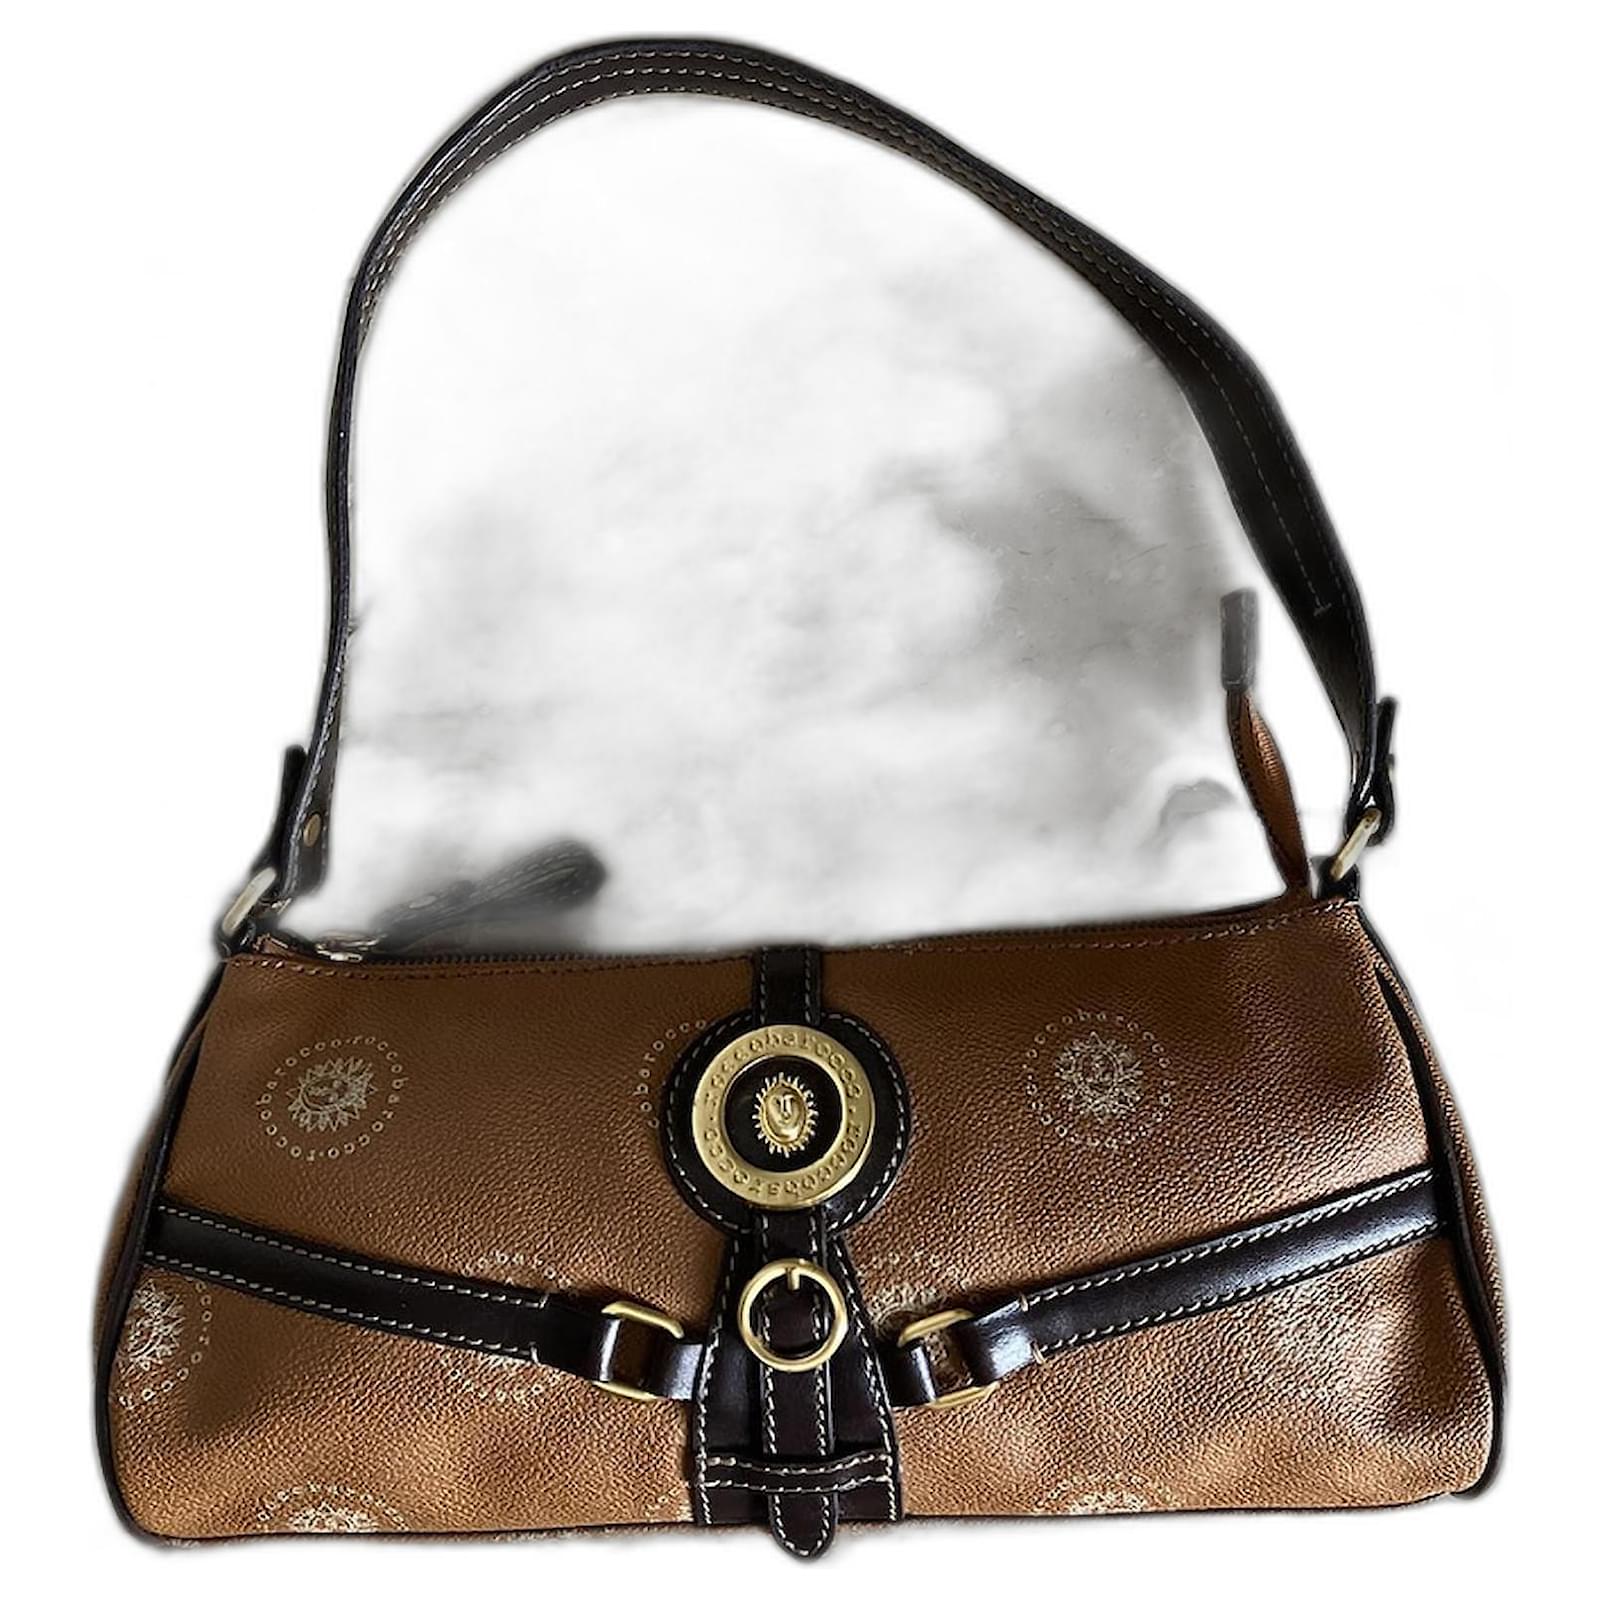 Rocco Barocco New Shoulder Bag Purse | eBay